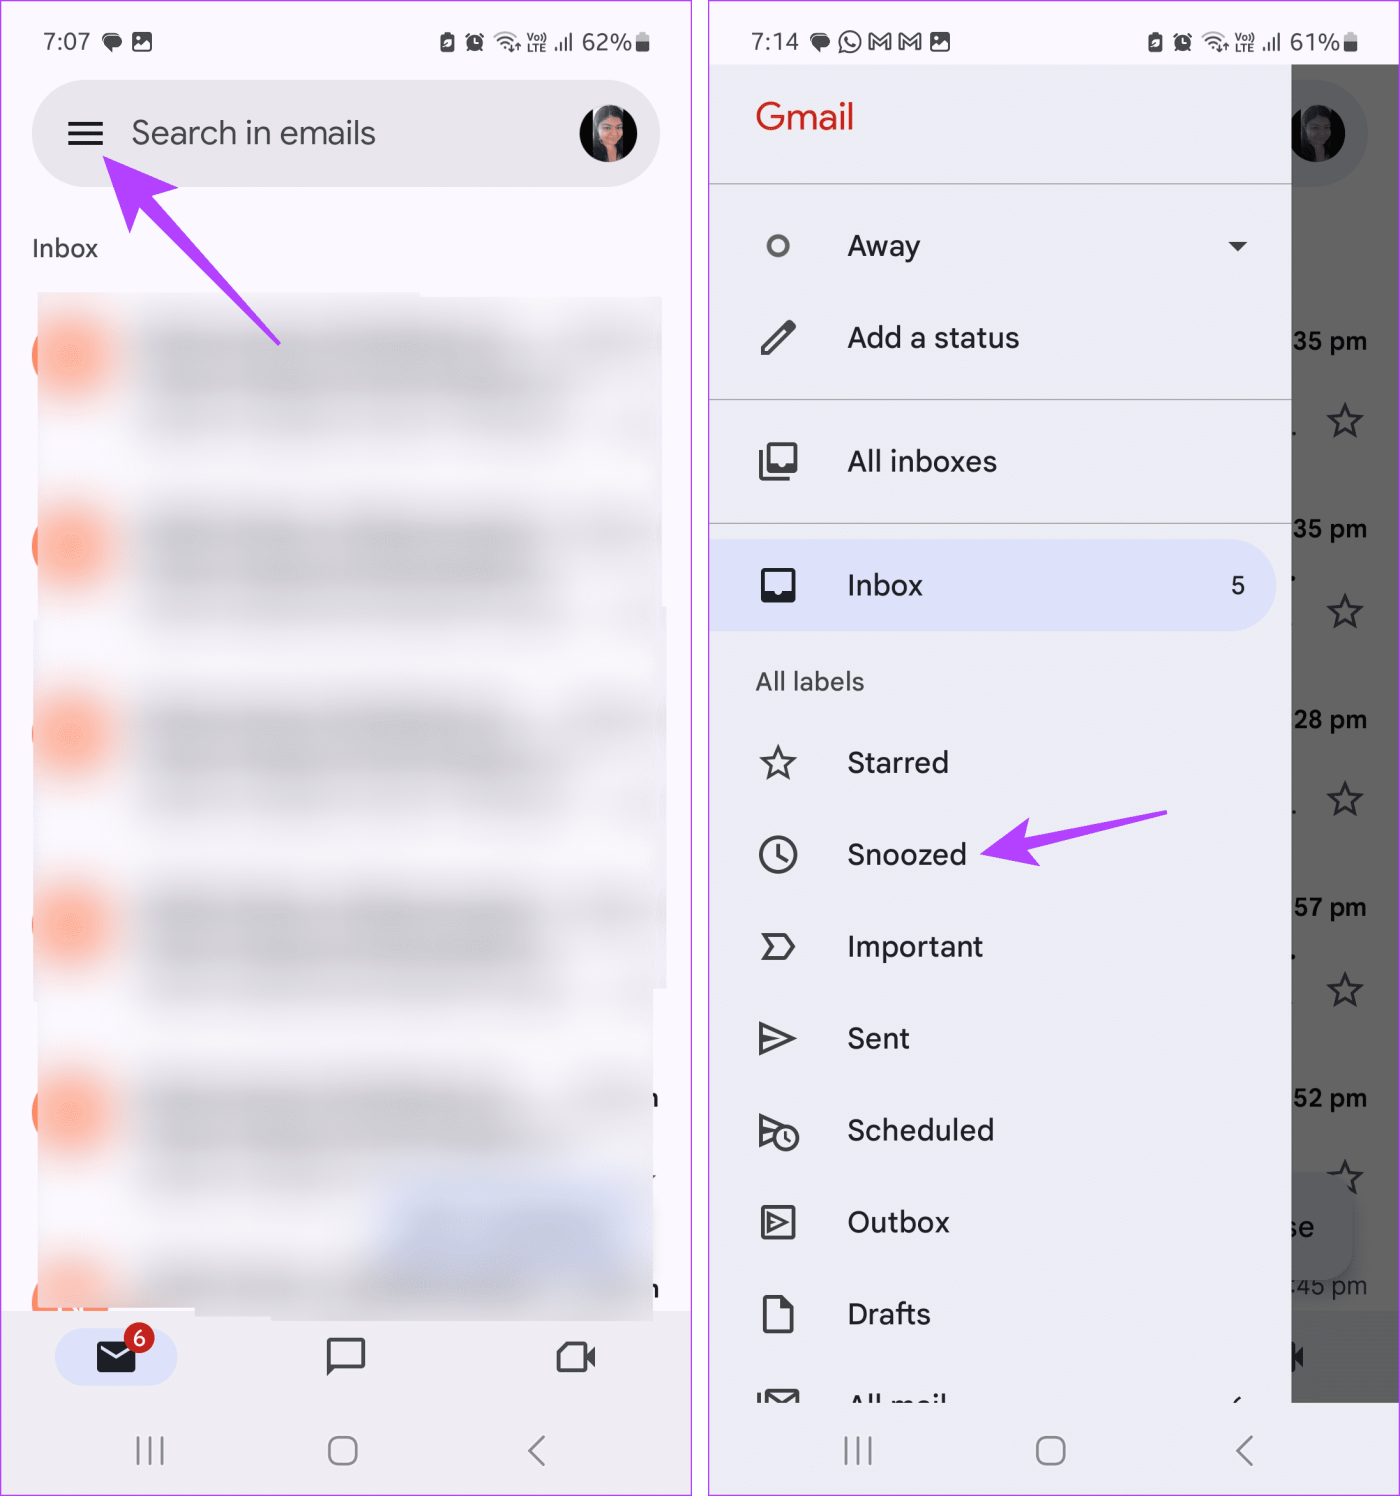 Jak korzystać z drzemki w Gmailu na urządzeniach mobilnych i komputerach